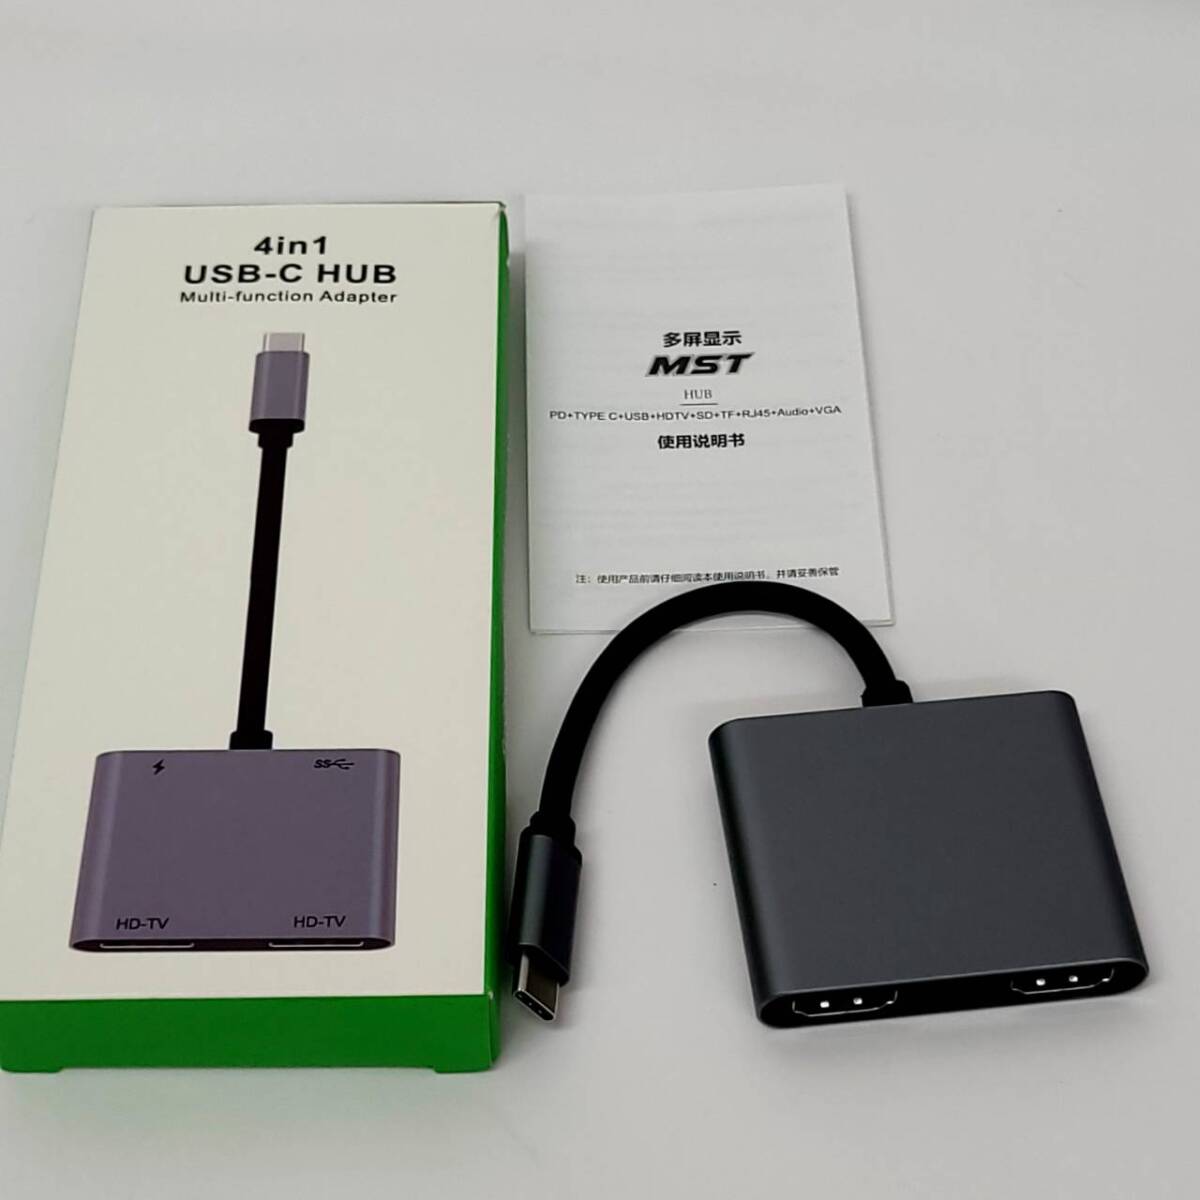 ★【在庫処分価格】USB-C HUB HDMI 変換アダプタ 4-in-1 Type-C 分配器 拡張モード ハブ☆C04-650aの画像1